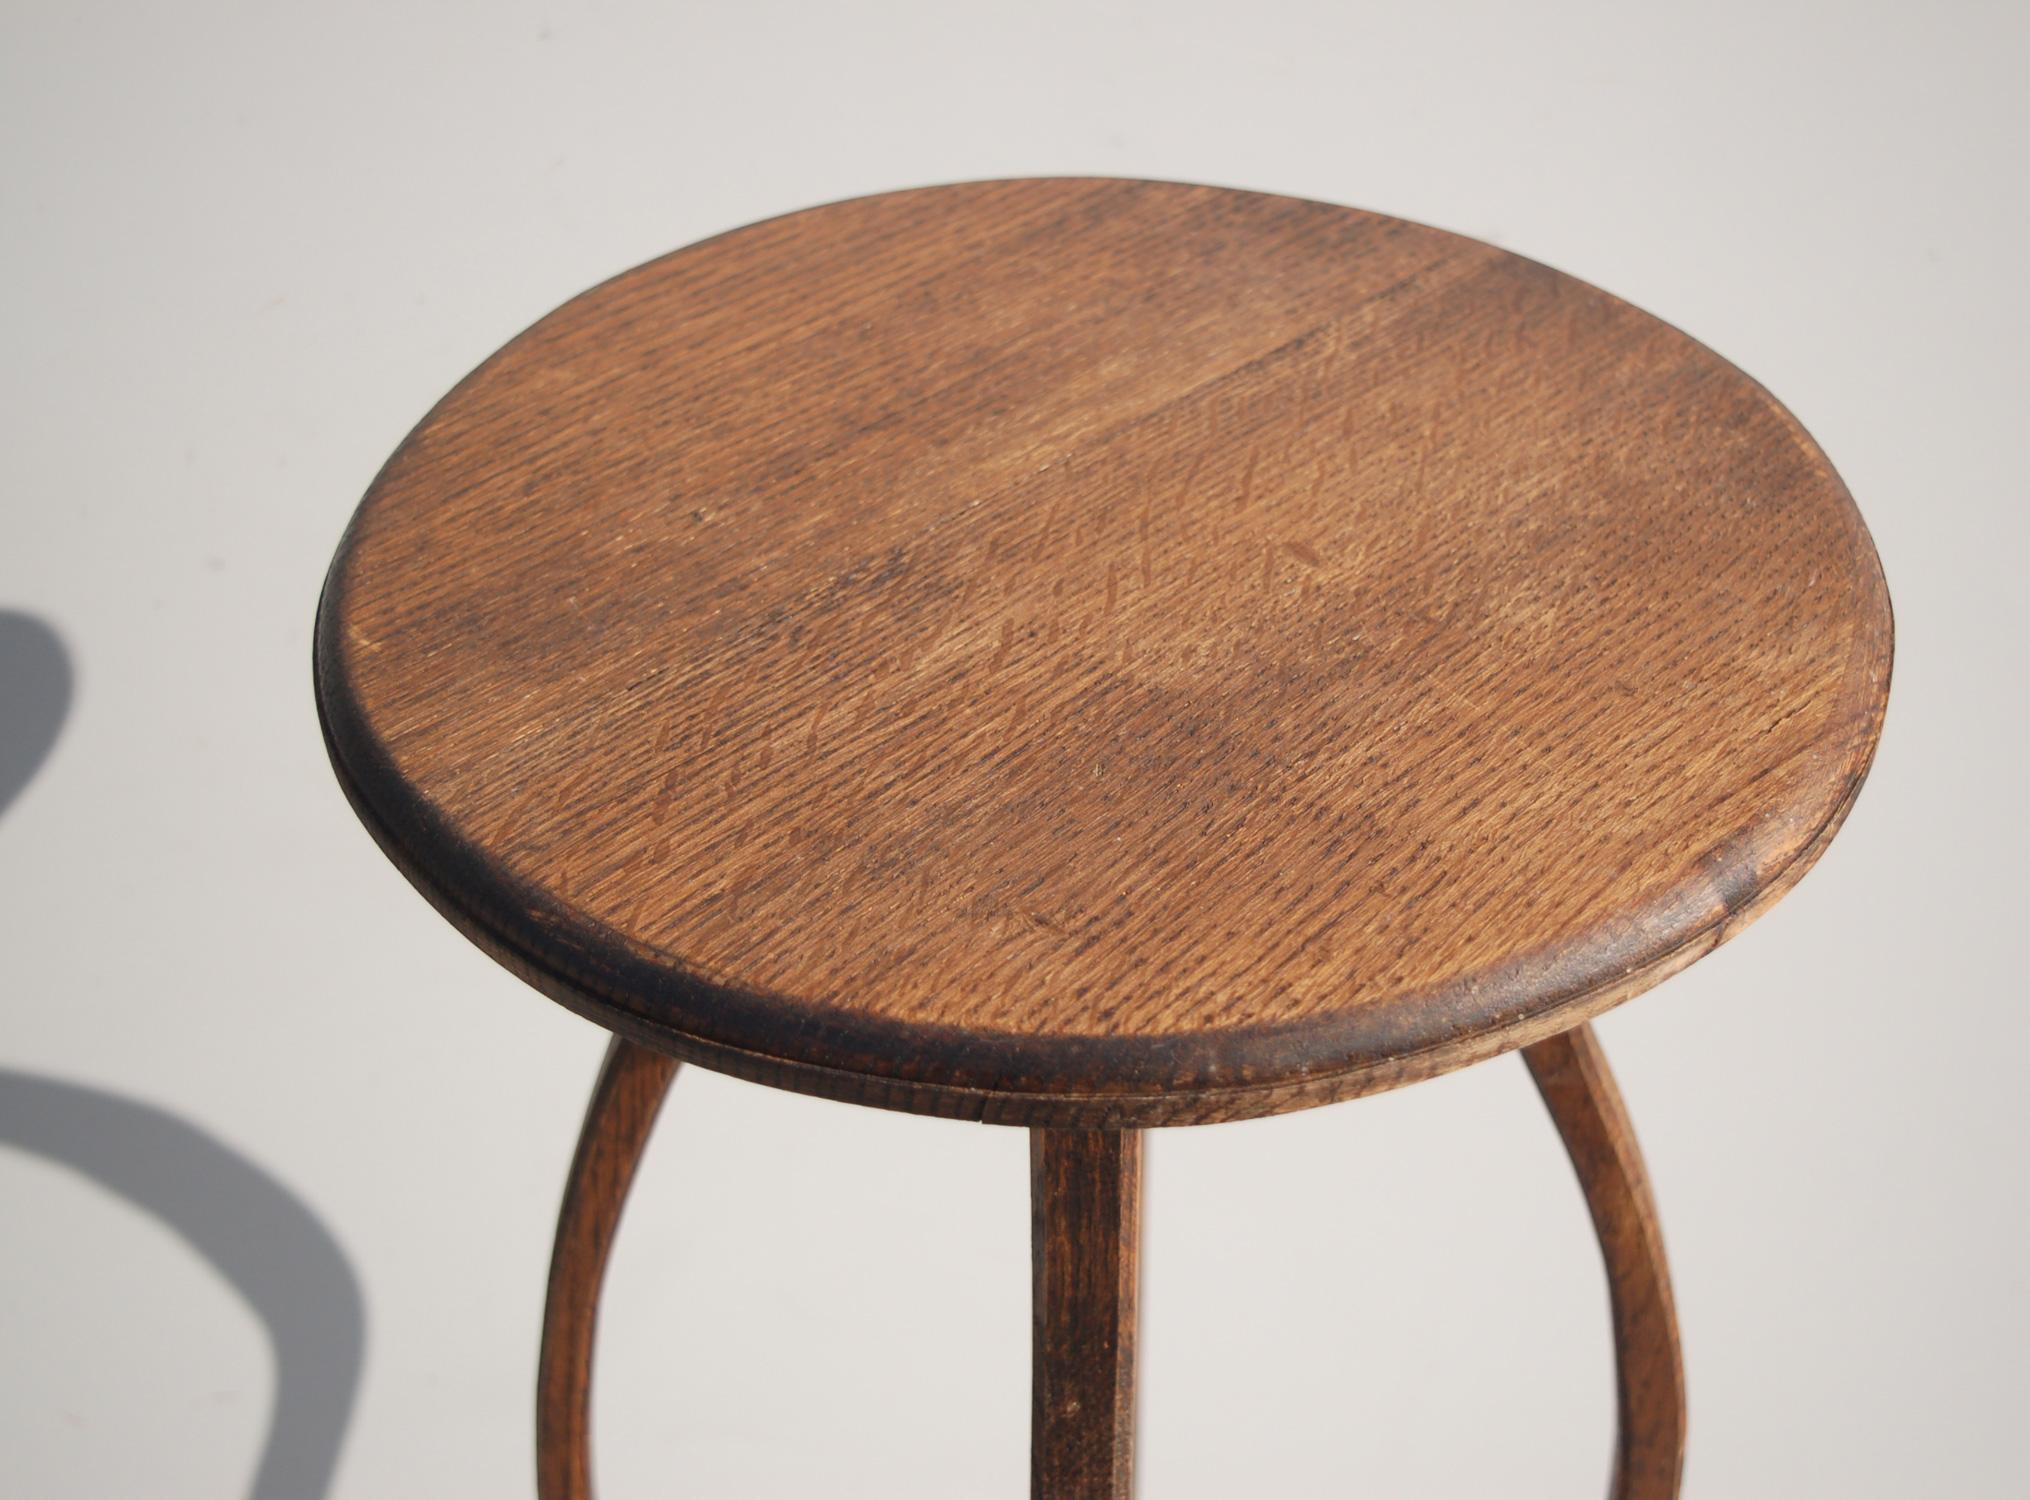 Art Nouveau 1970s Oak Pedestal Table with Curved Legs For Sale